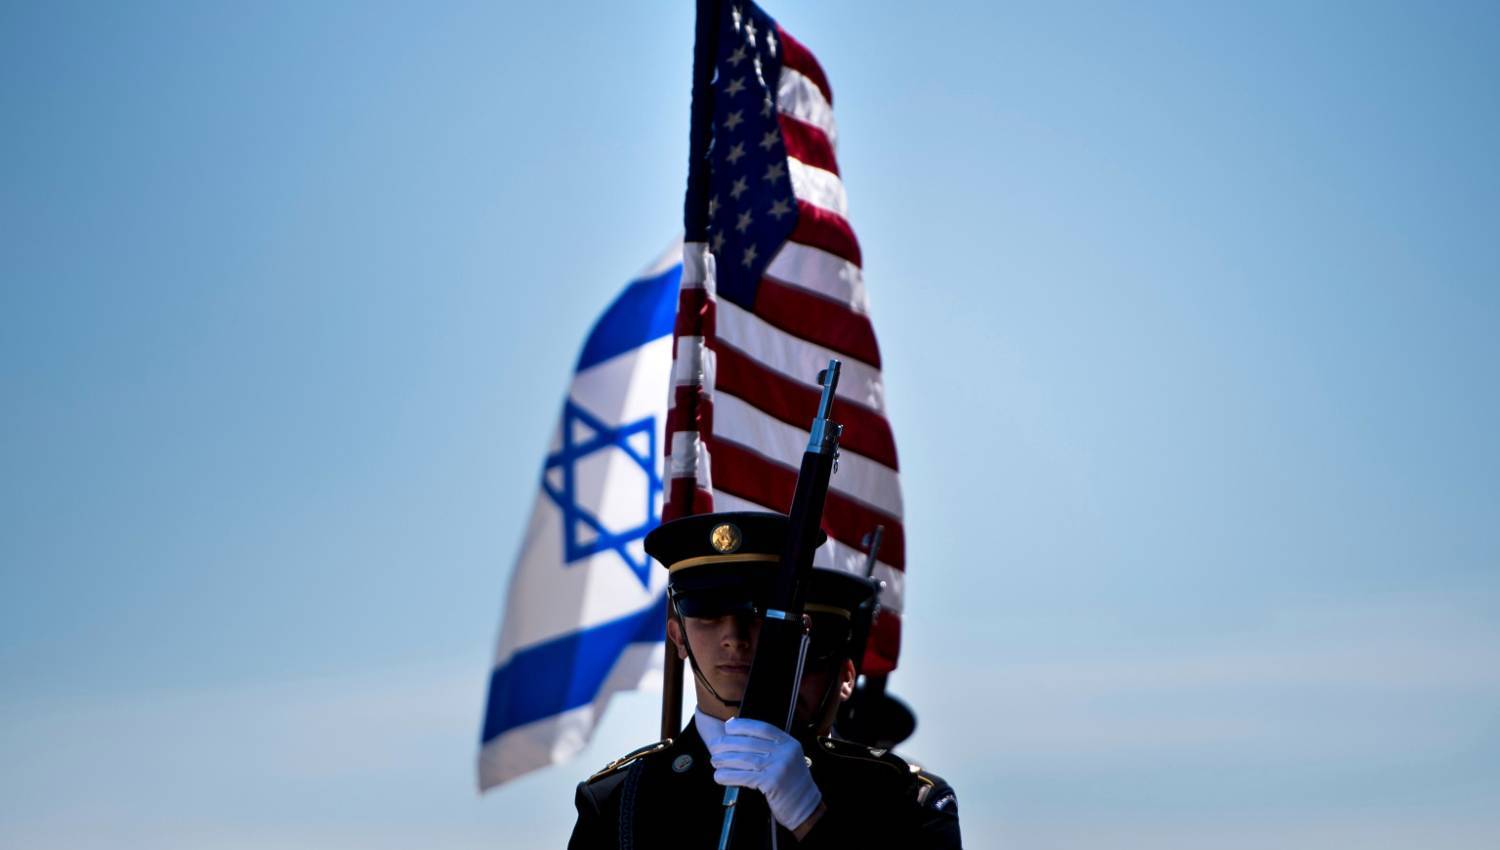 الدعم الأميركي لإسرائيل: واشنطن أيضاً ليست مستعدة لـ "طوفان الأقصى"!